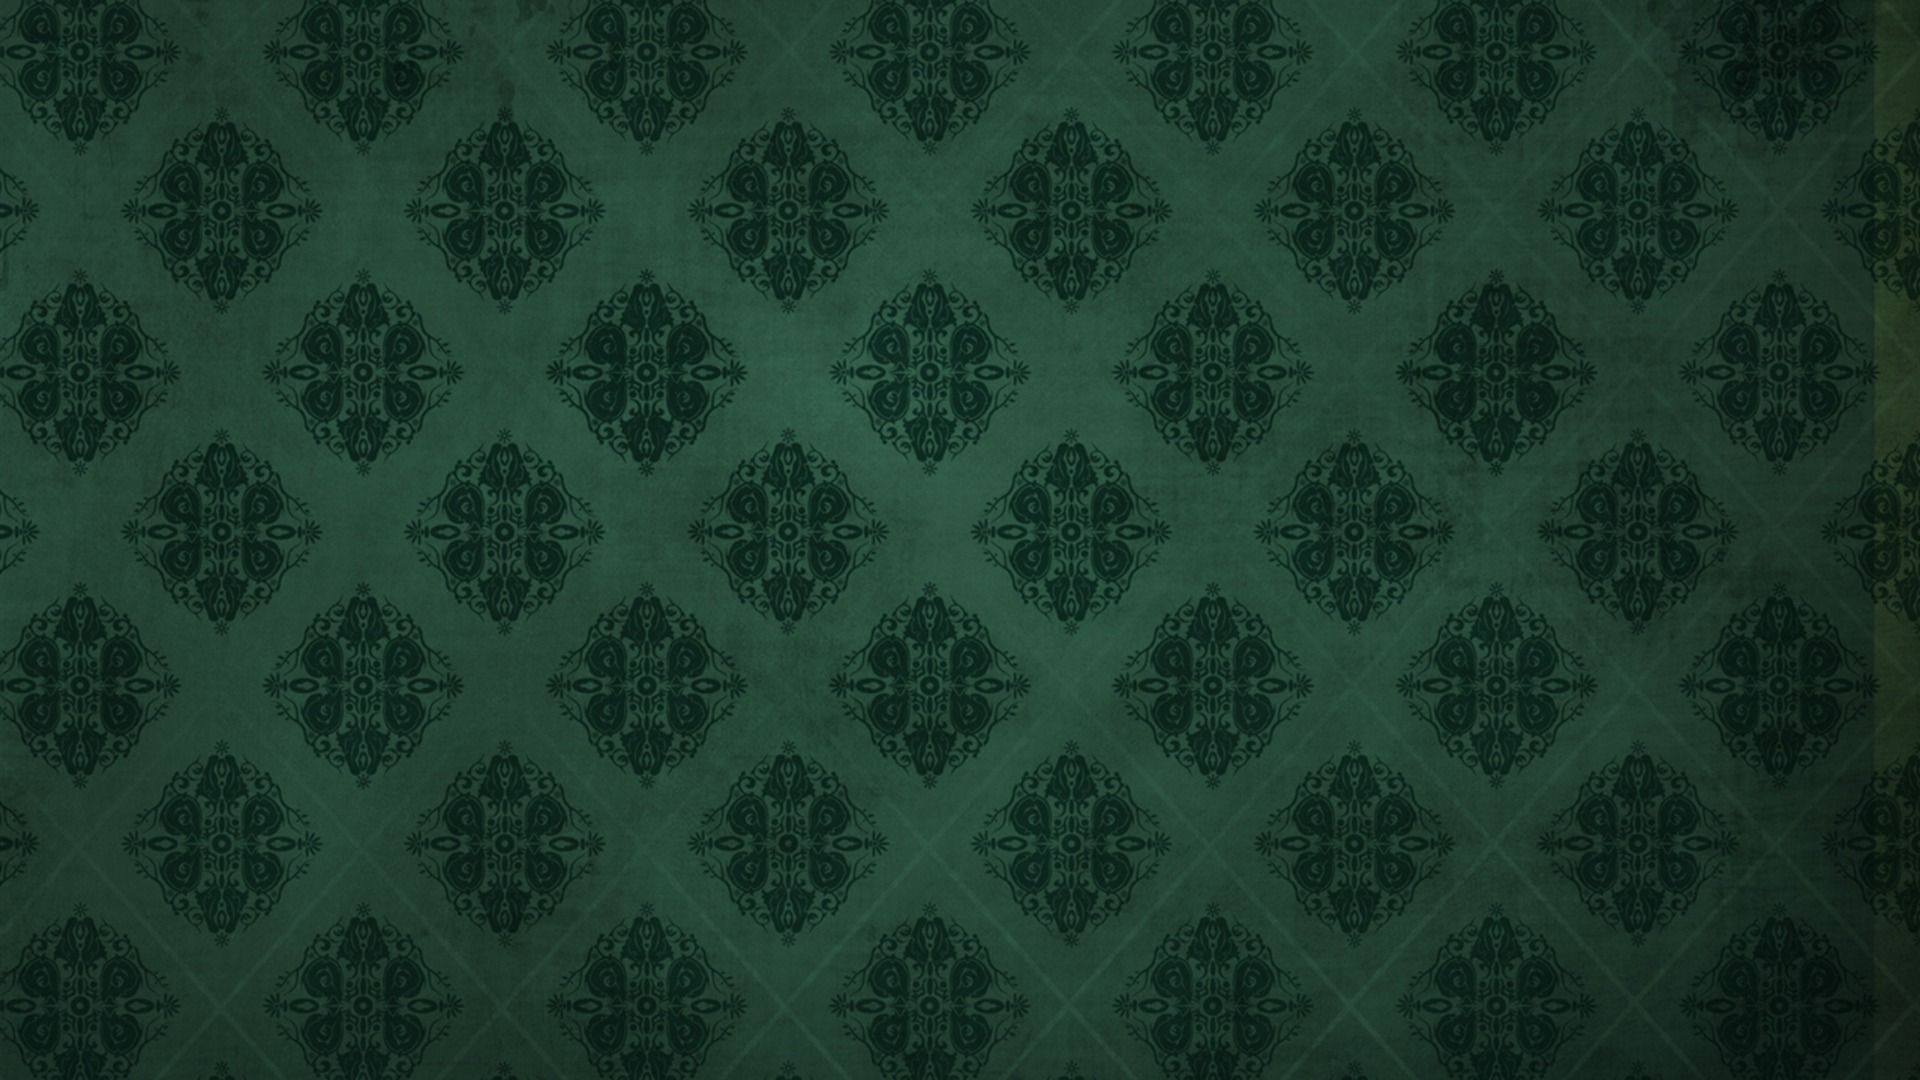 Giấy dán tường vintage màu xanh lá cây là một trong những lựa chọn tuyệt vời để trang trí cho căn phòng của bạn. Thiết kế với gam màu độc đáo và họa tiết đẹp mắt sẽ mang lại cảm giác vừa giản dị vừa sang trọng cho không gian sống của bạn. Hãy cùng chiêm ngưỡng hình nền giấy dán tường đẹp mắt này!